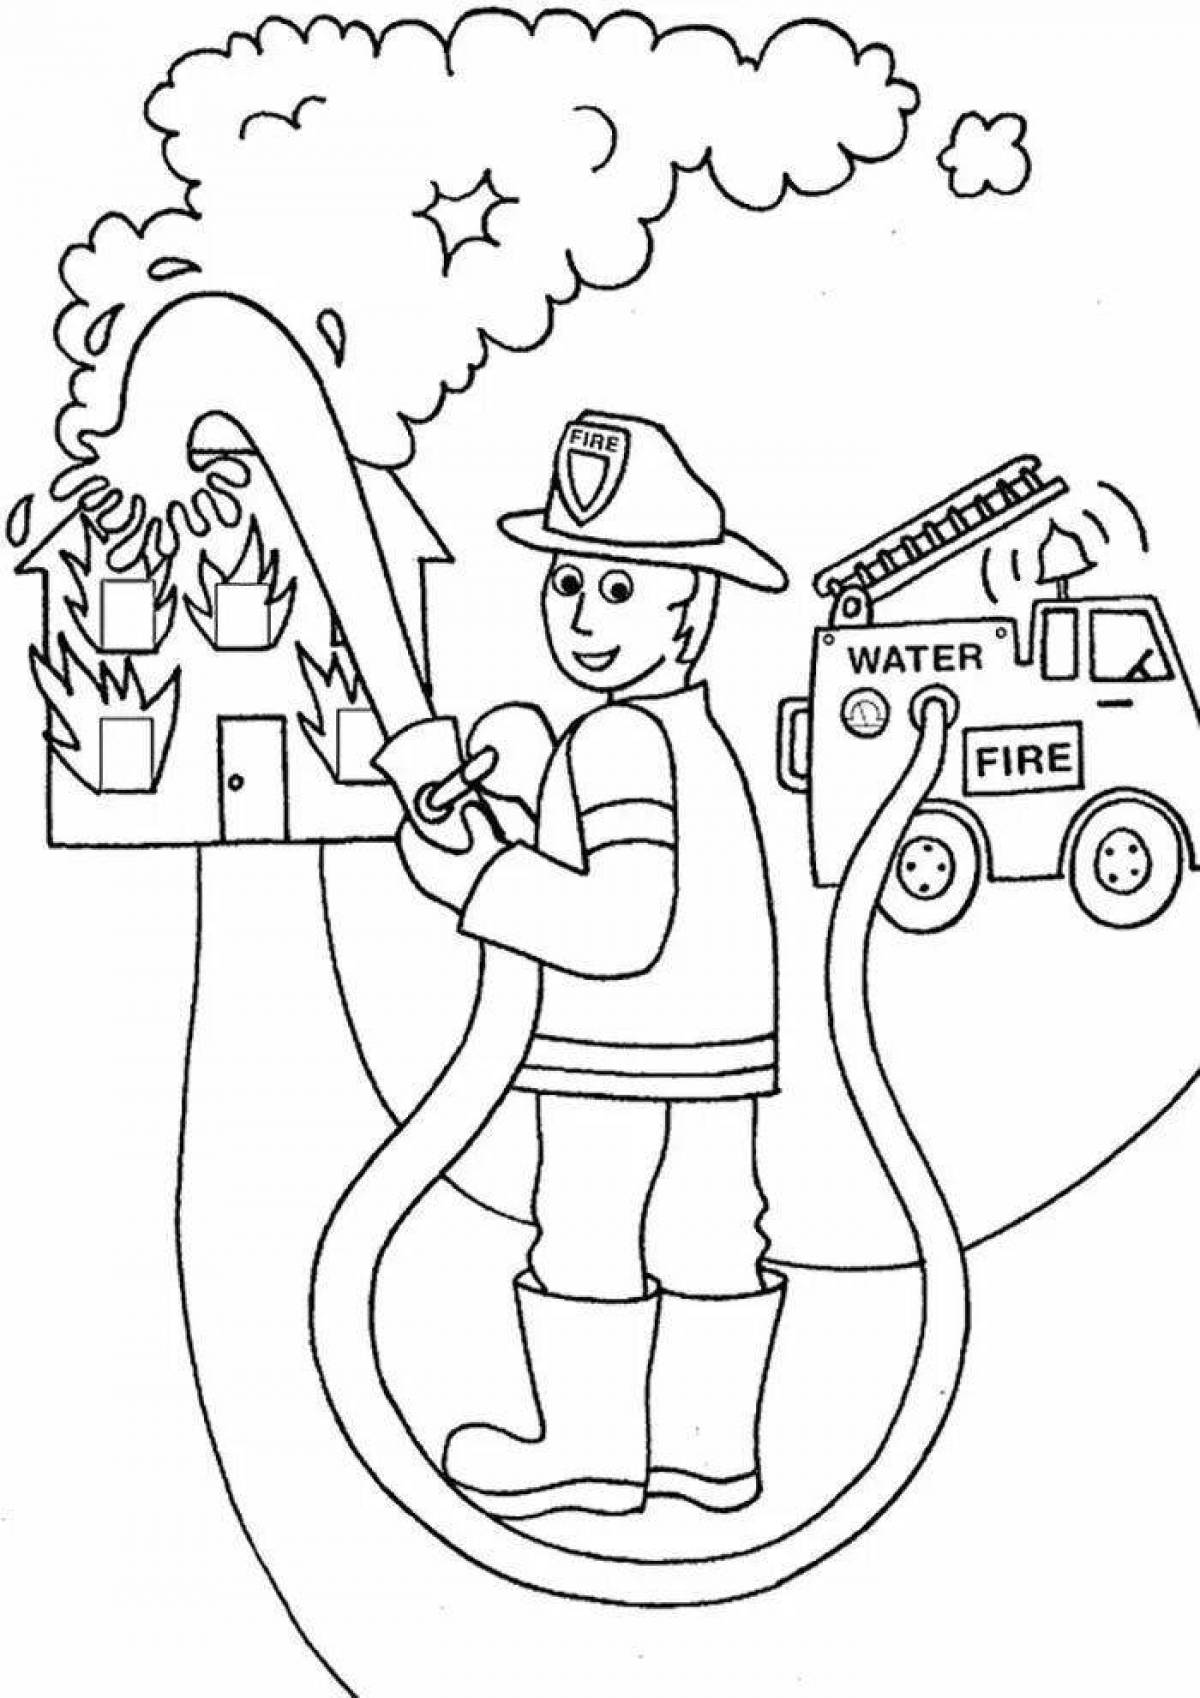 Пожарная безопасность в детском саду заставляет задуматься